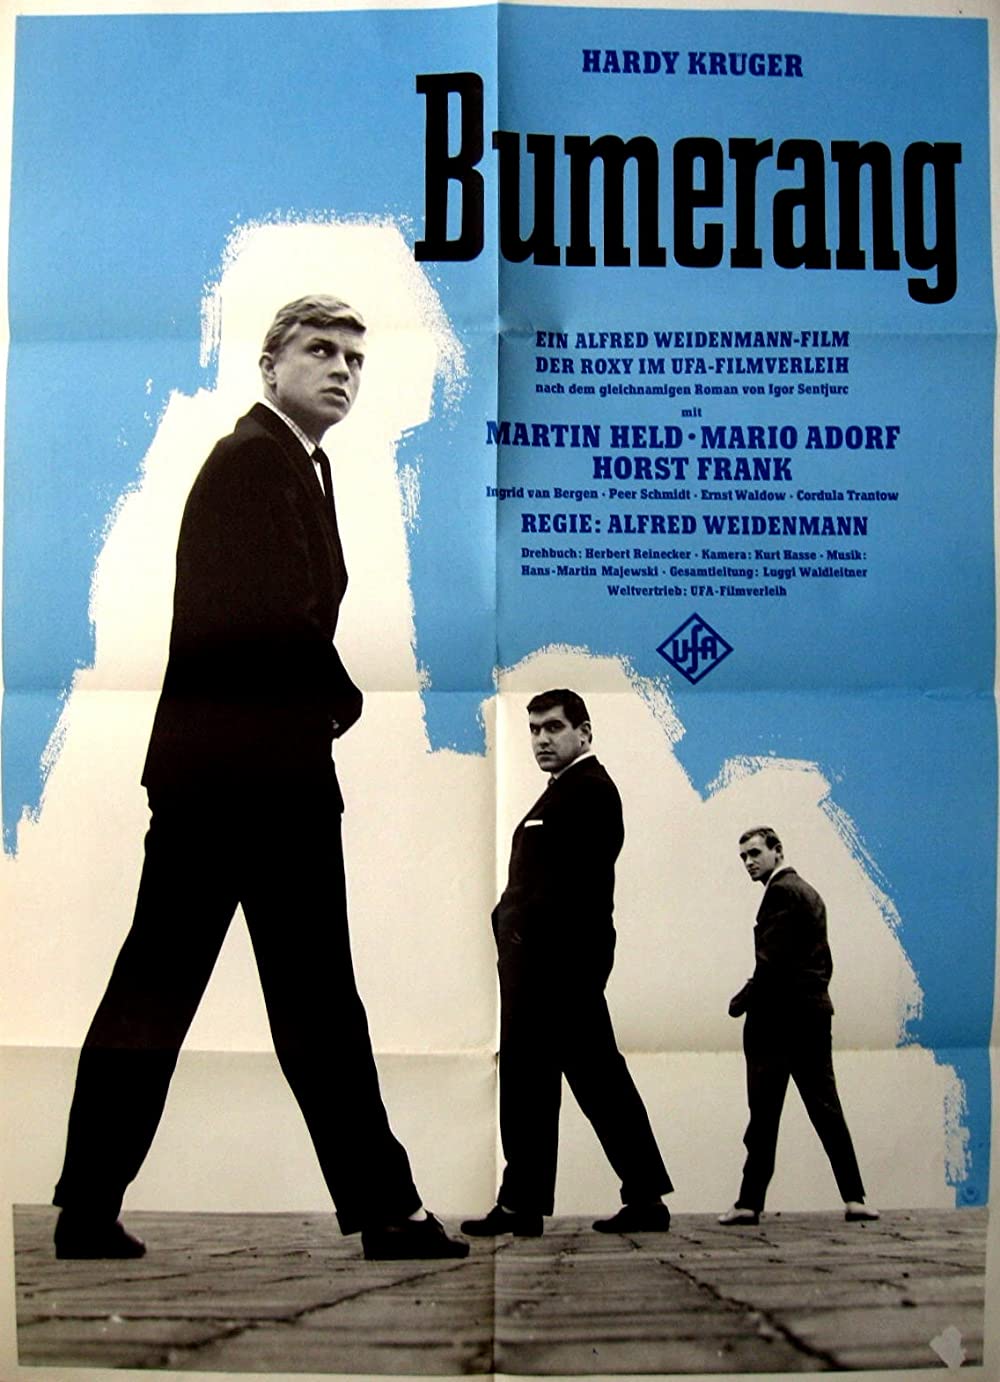 Filmbeschreibung zu Bumerang (1960)